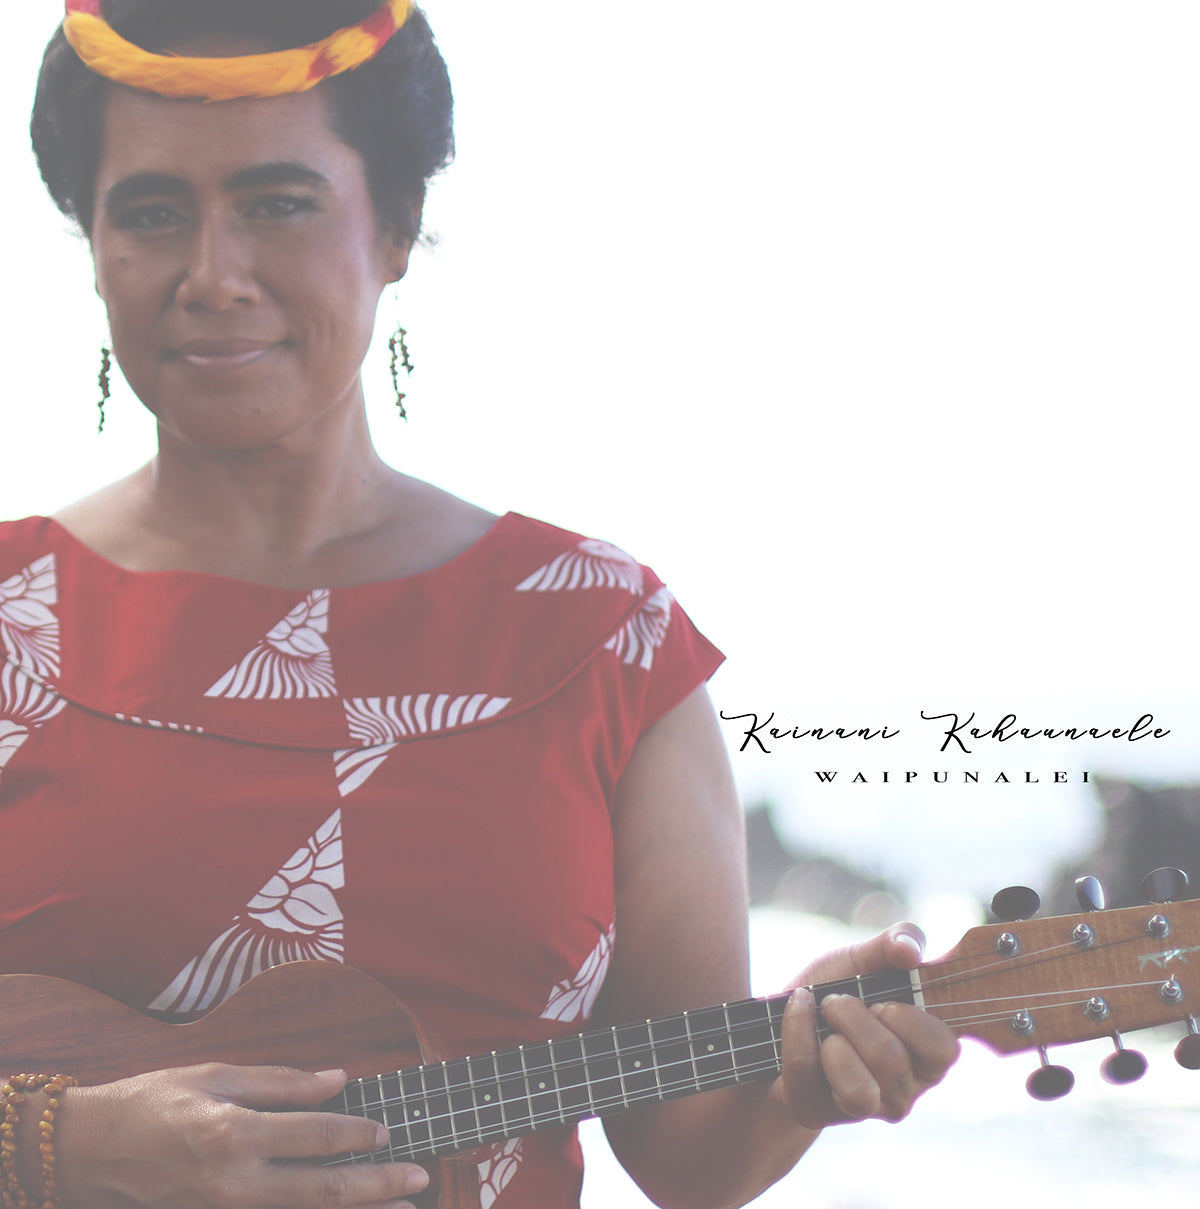 LIMITED Waipunalei EP Vinyl Album by Kainani Kahaunaele